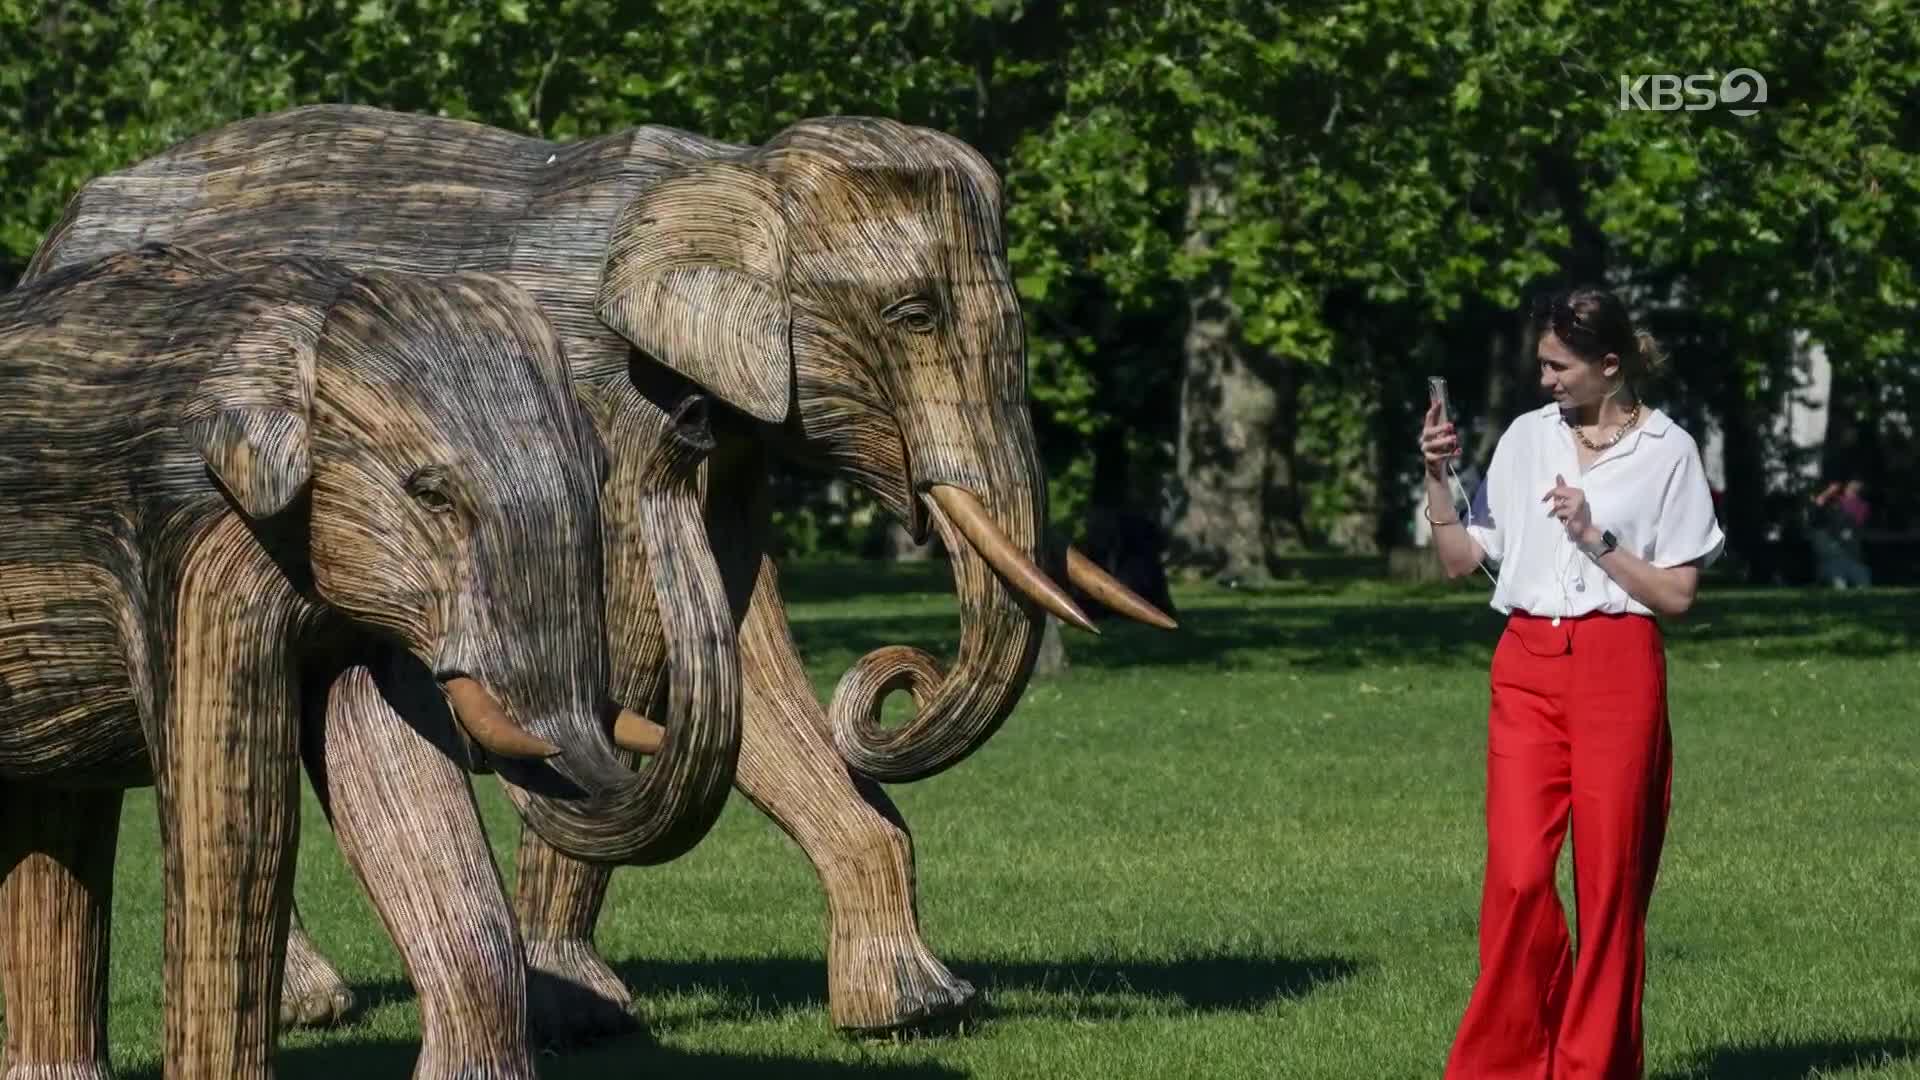 [지구촌 포토] 영국, 실제 크기 코끼리 떼 조각상…동물과 공존하는 삶 강조